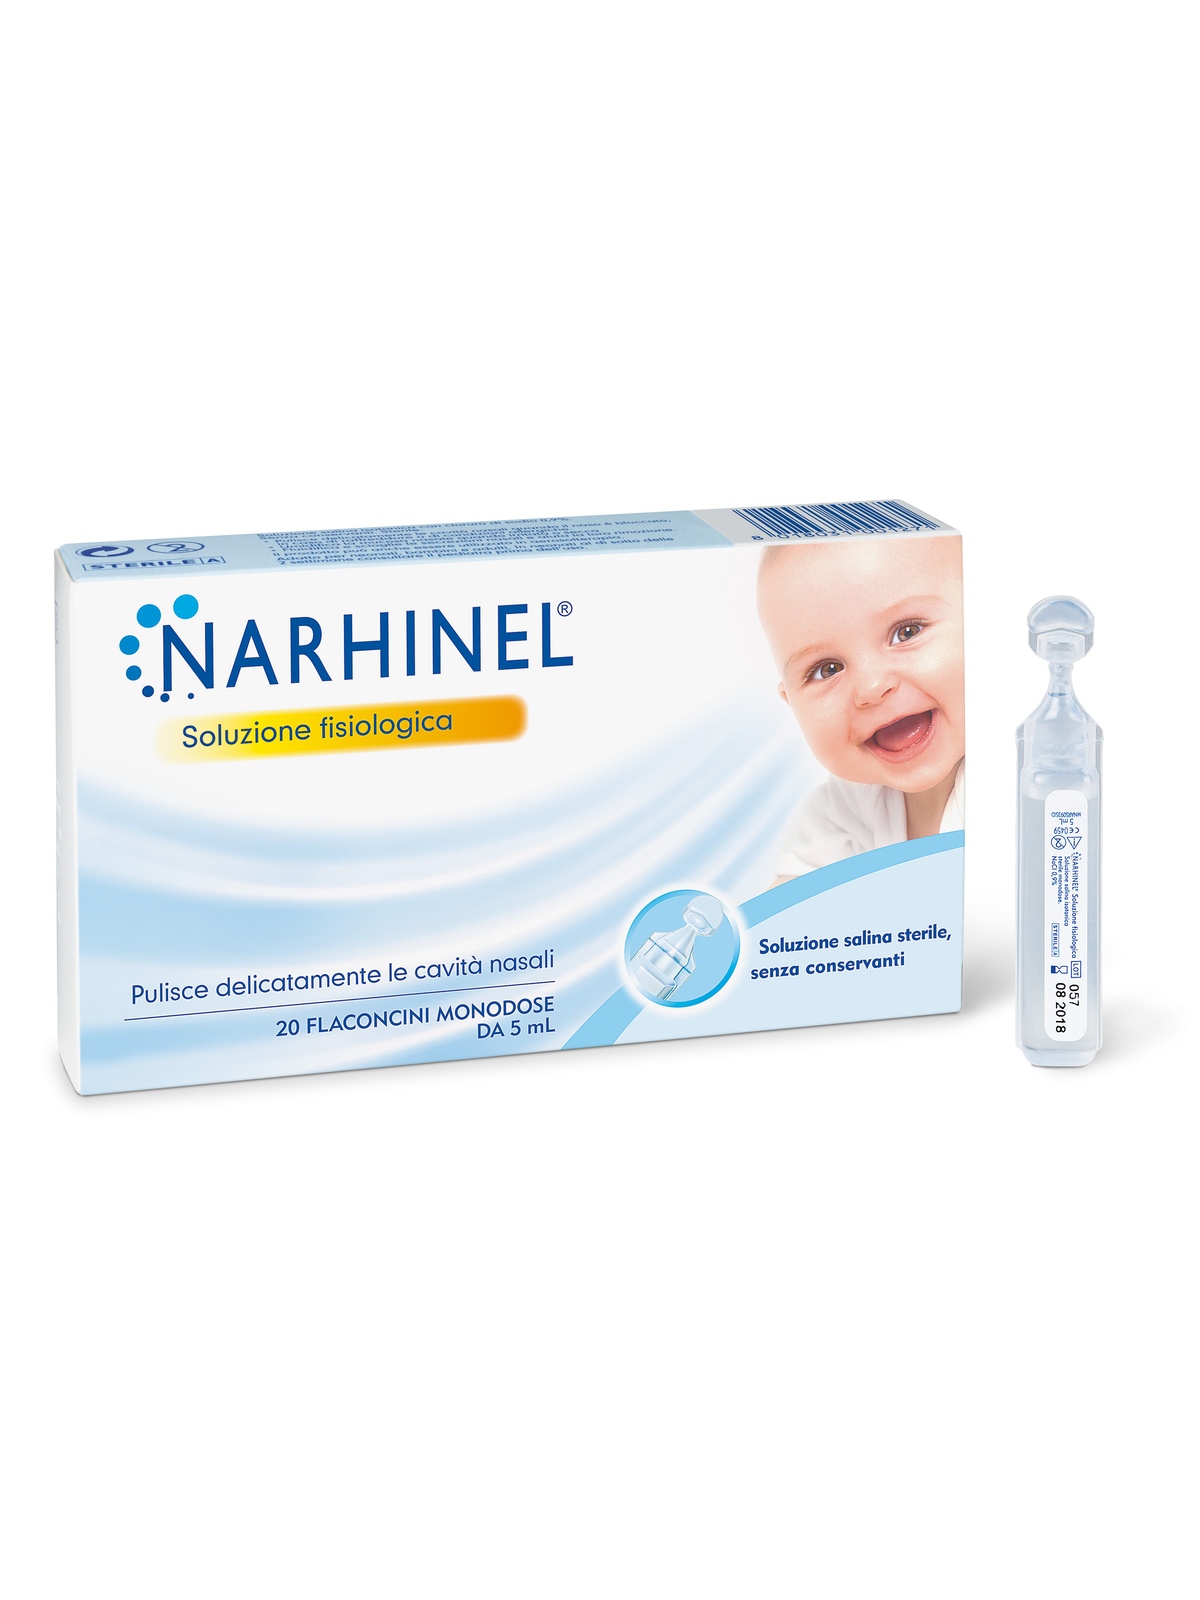 Narhinel soluzione fisiologica, soluzione salina isotonica, detersione delicata delle cavità nasali in caso di naso chiuso, confezione da 20 flaconcini monodose x 5 ml - NARHINEL